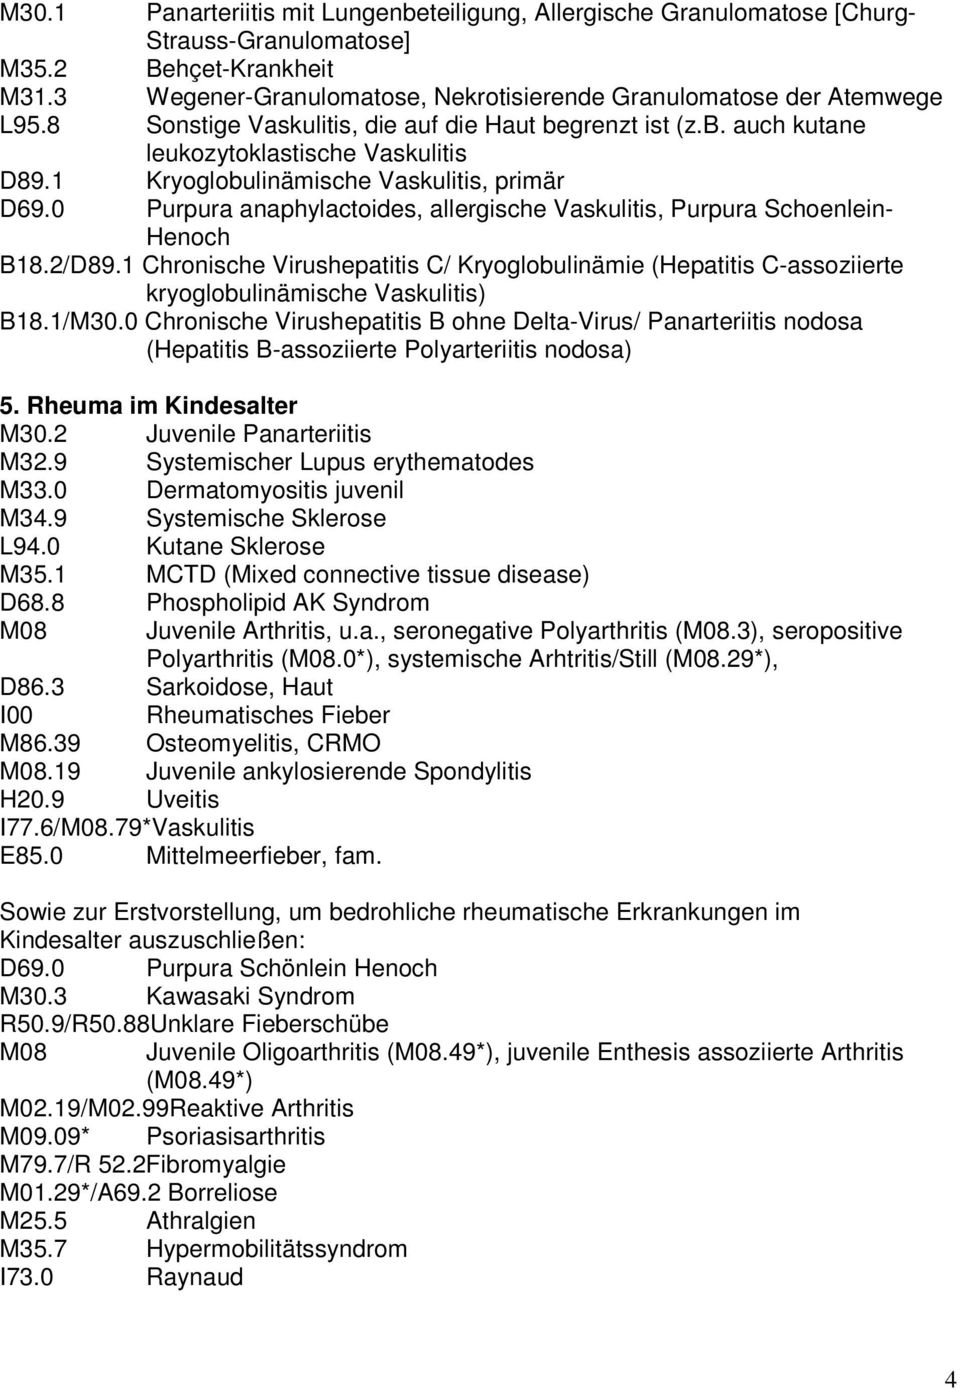 0 Purpura anaphylactoides, allergische Vaskulitis, Purpura Schoenlein- Henoch B18.2/D89.1 Chronische Virushepatitis C/ Kryoglobulinämie (Hepatitis C-assoziierte kryoglobulinämische Vaskulitis) B18.